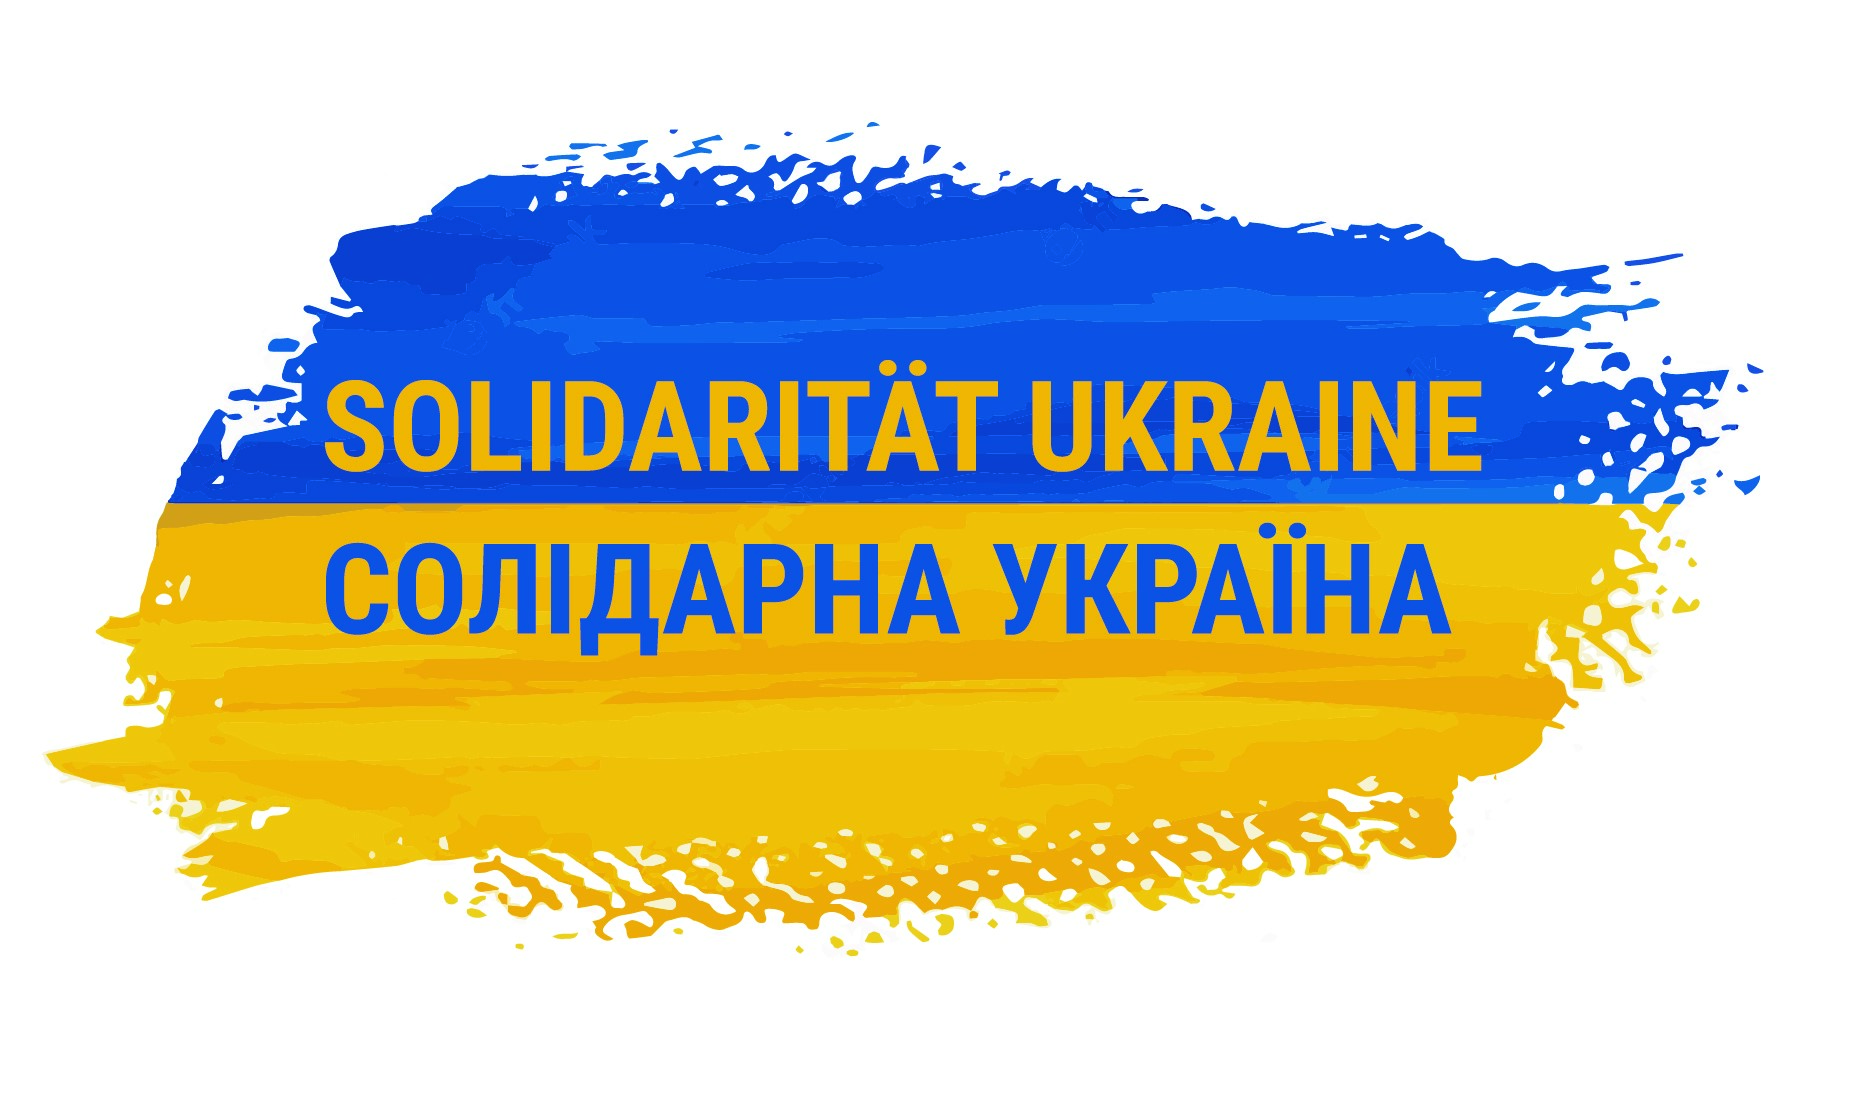 Solidaritä UKRAINE